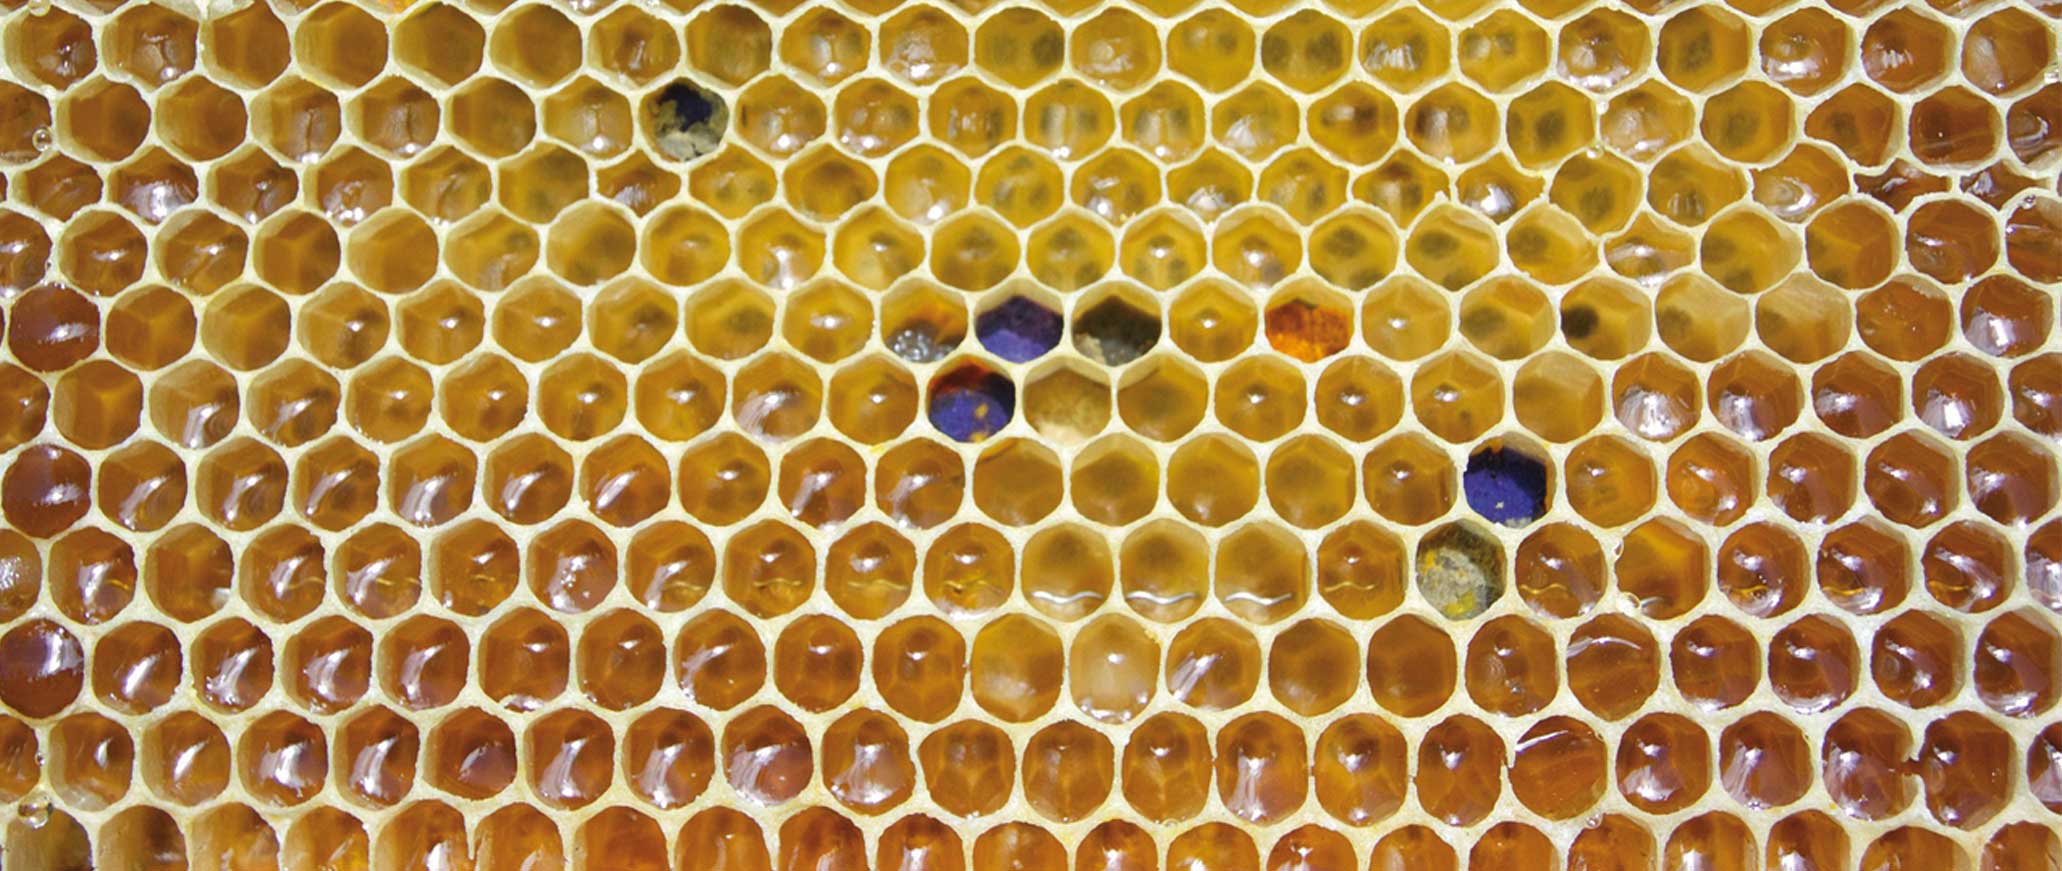 Producción de cera y panales de abejas - Educación ambiental Madrid